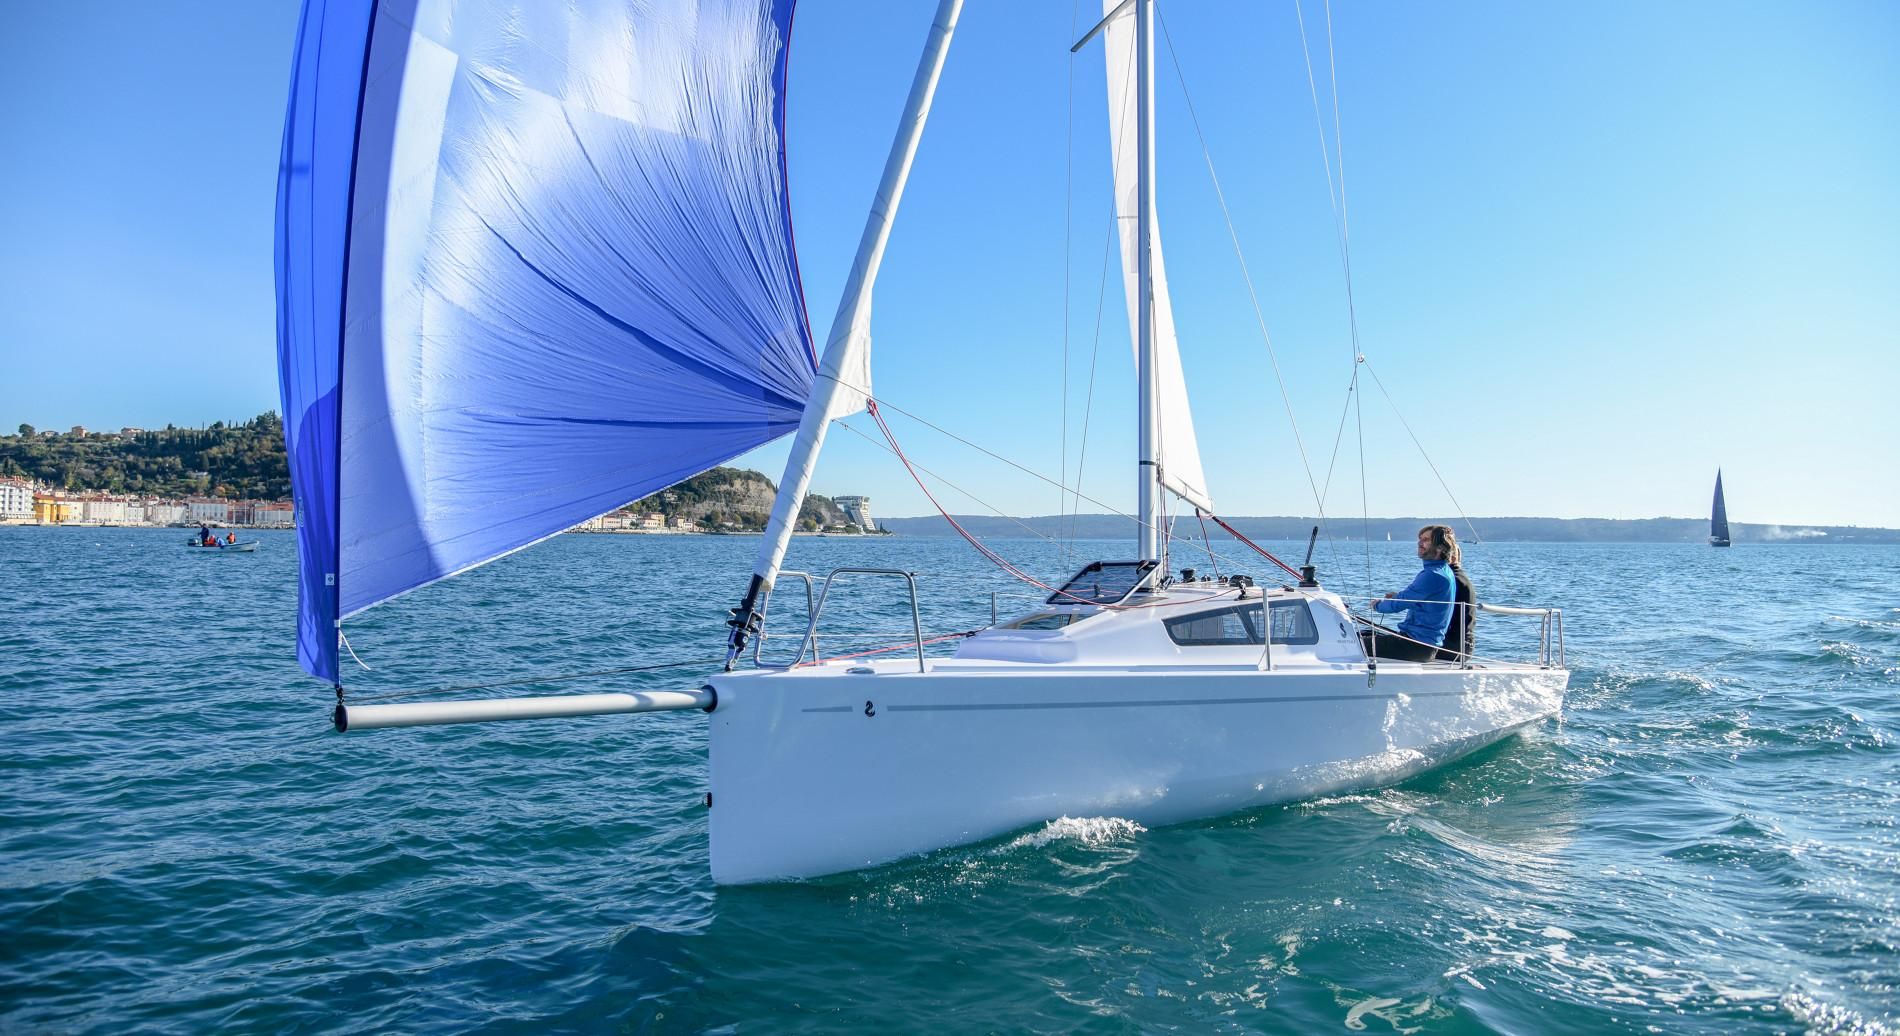 beneteau 24 sailboat